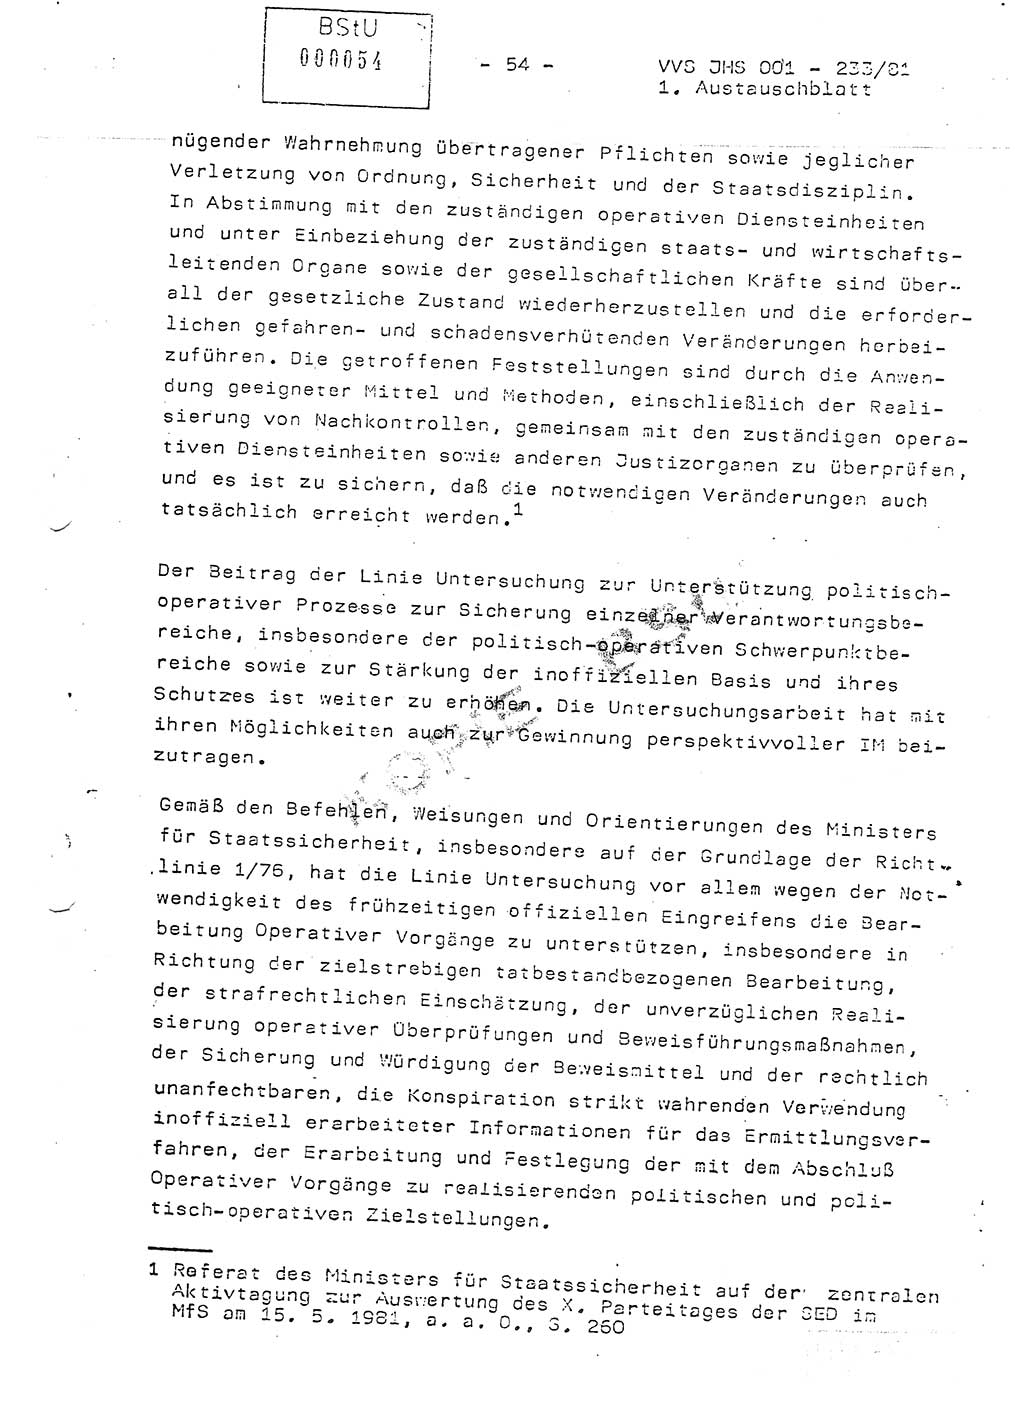 Dissertation Oberstleutnant Horst Zank (JHS), Oberstleutnant Dr. Karl-Heinz Knoblauch (JHS), Oberstleutnant Gustav-Adolf Kowalewski (HA Ⅸ), Oberstleutnant Wolfgang Plötner (HA Ⅸ), Ministerium für Staatssicherheit (MfS) [Deutsche Demokratische Republik (DDR)], Juristische Hochschule (JHS), Vertrauliche Verschlußsache (VVS) o001-233/81, Potsdam 1981, Blatt 54 (Diss. MfS DDR JHS VVS o001-233/81 1981, Bl. 54)